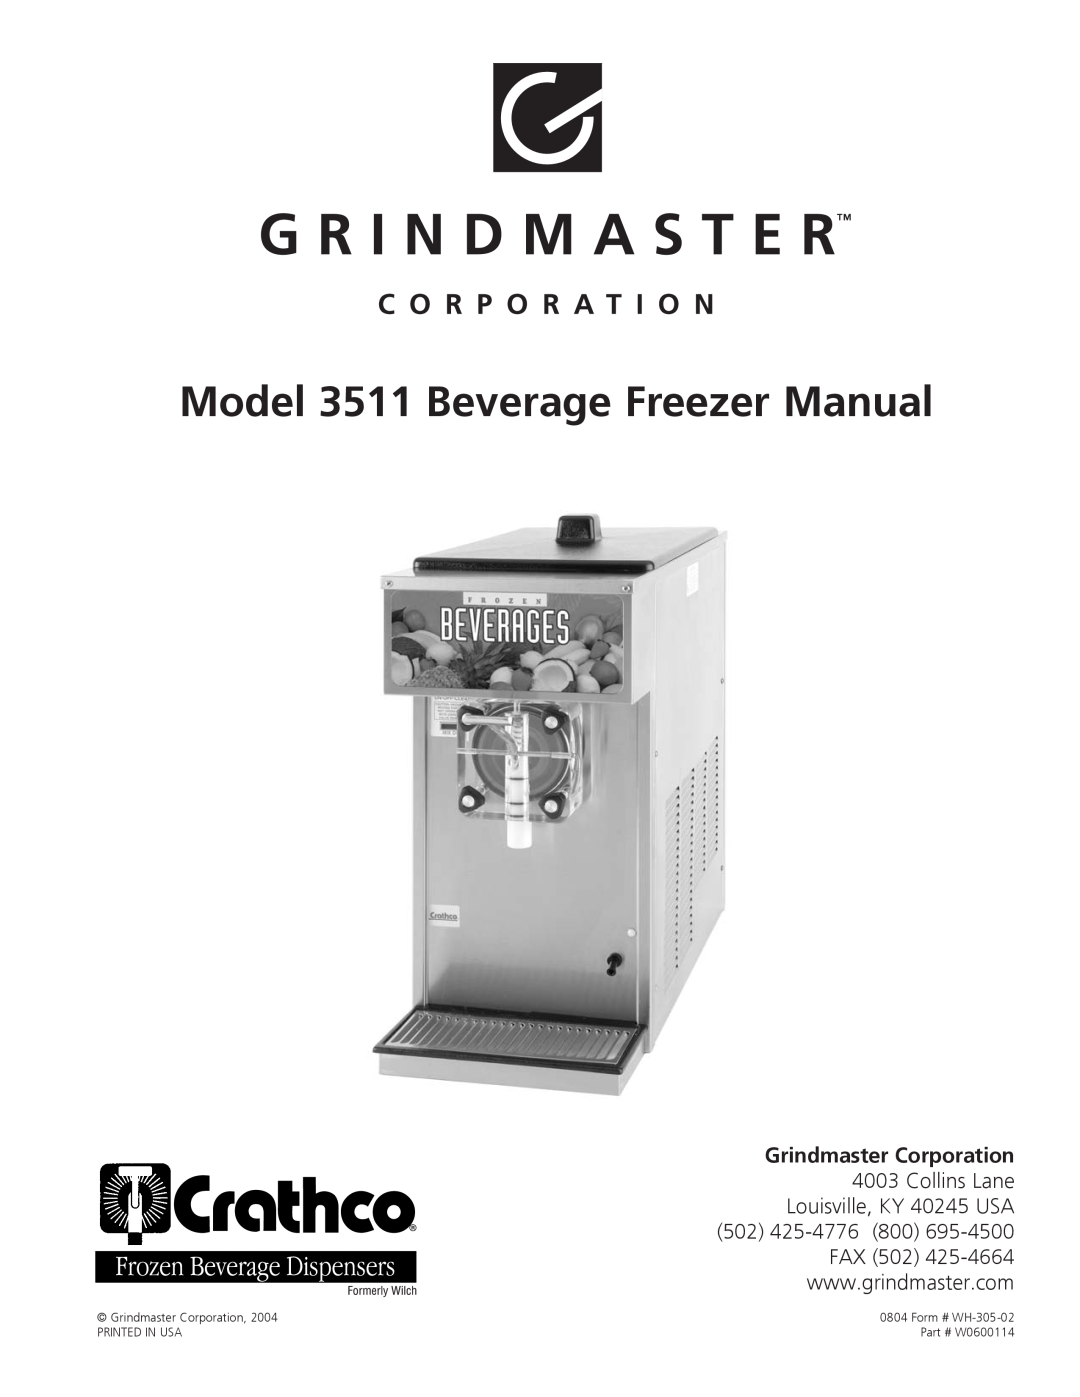 Grindmaster manual Model 3511 Beverage Freezer Manual, Grindmaster Corporation, Form # WH-305-02, W0600114 